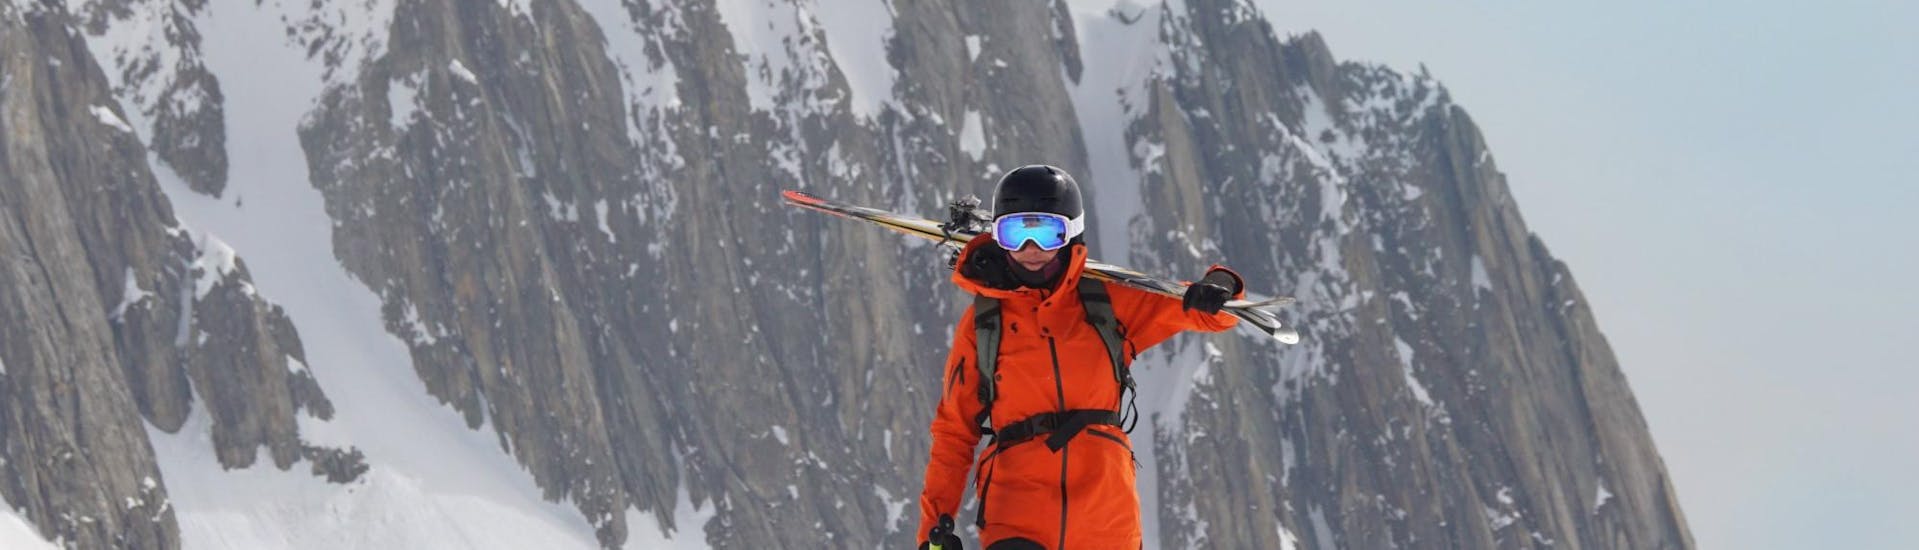 Privater Skikurs "Premium" für Erwachsene aller Levels mit Eco Skischule Andermatt.